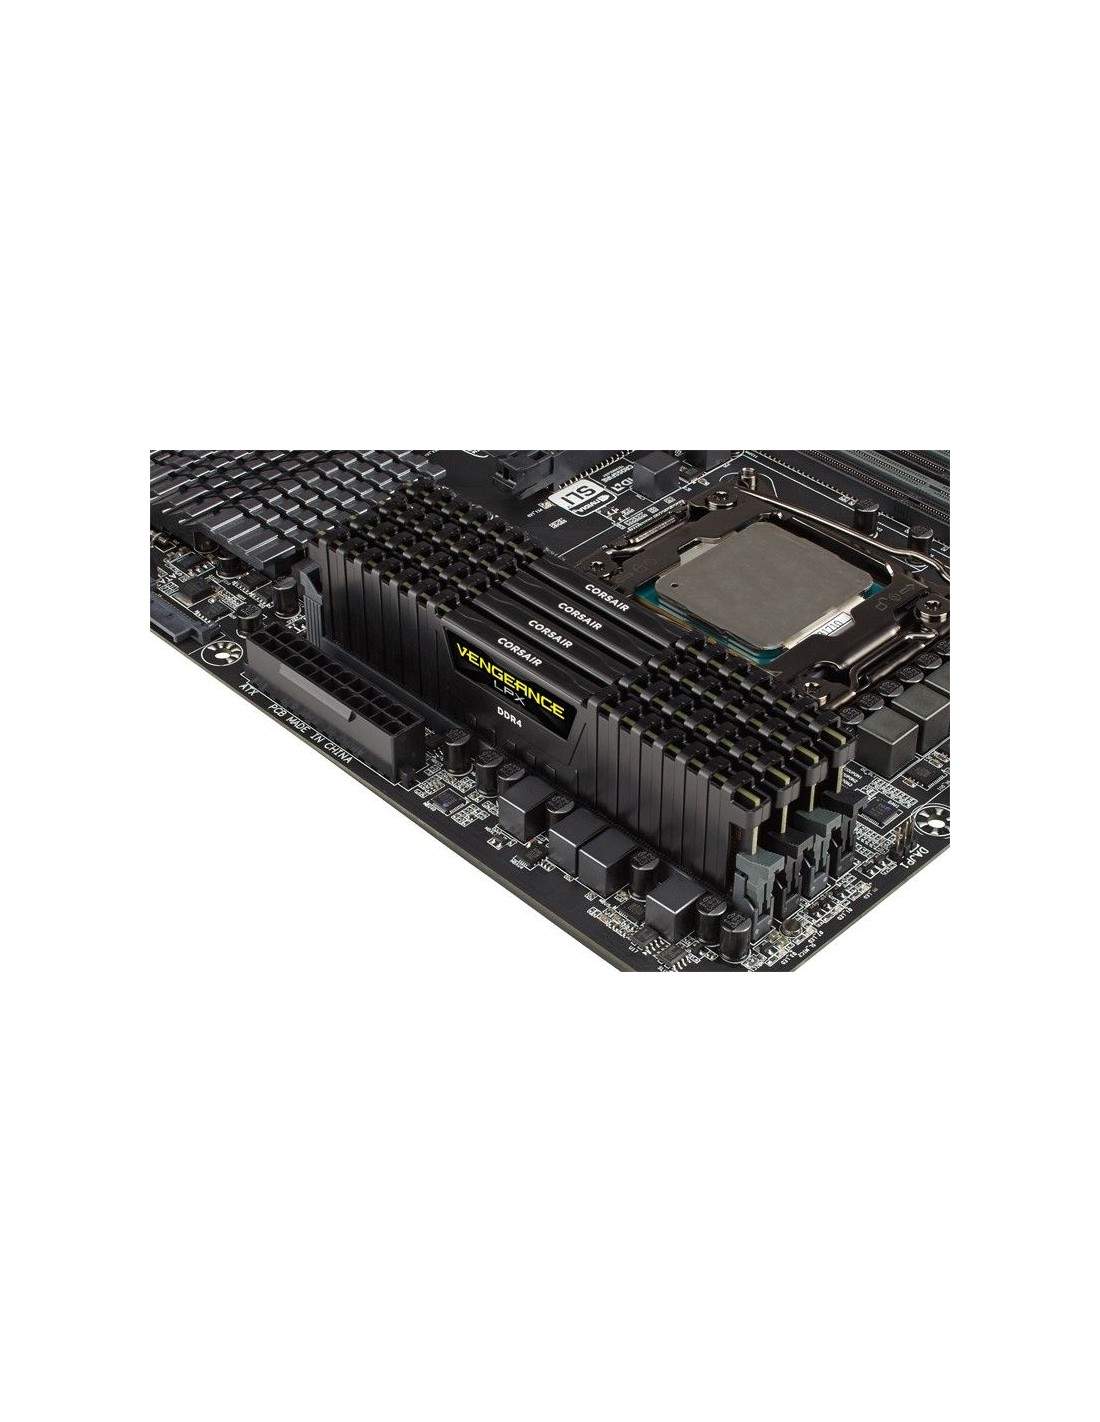 Comprar Corsair Vengeance LPX 16 GB, DDR4, 3000 MHz módulo de memoria 2 x GB en Última Informática al mejor precio y envío rápido